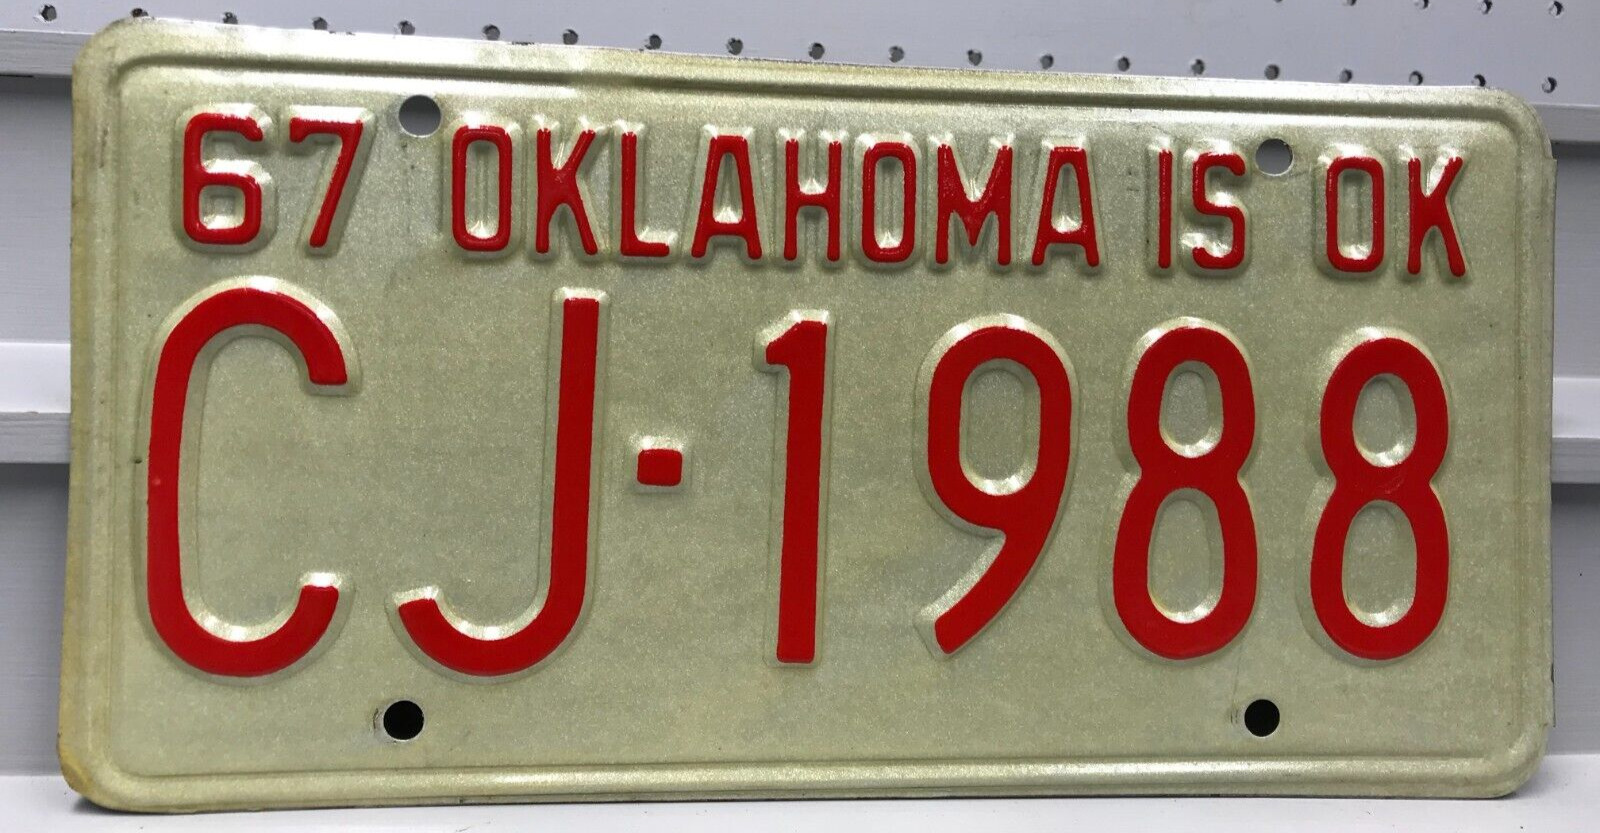 1967 Oklahoma License Plate CJ-1988